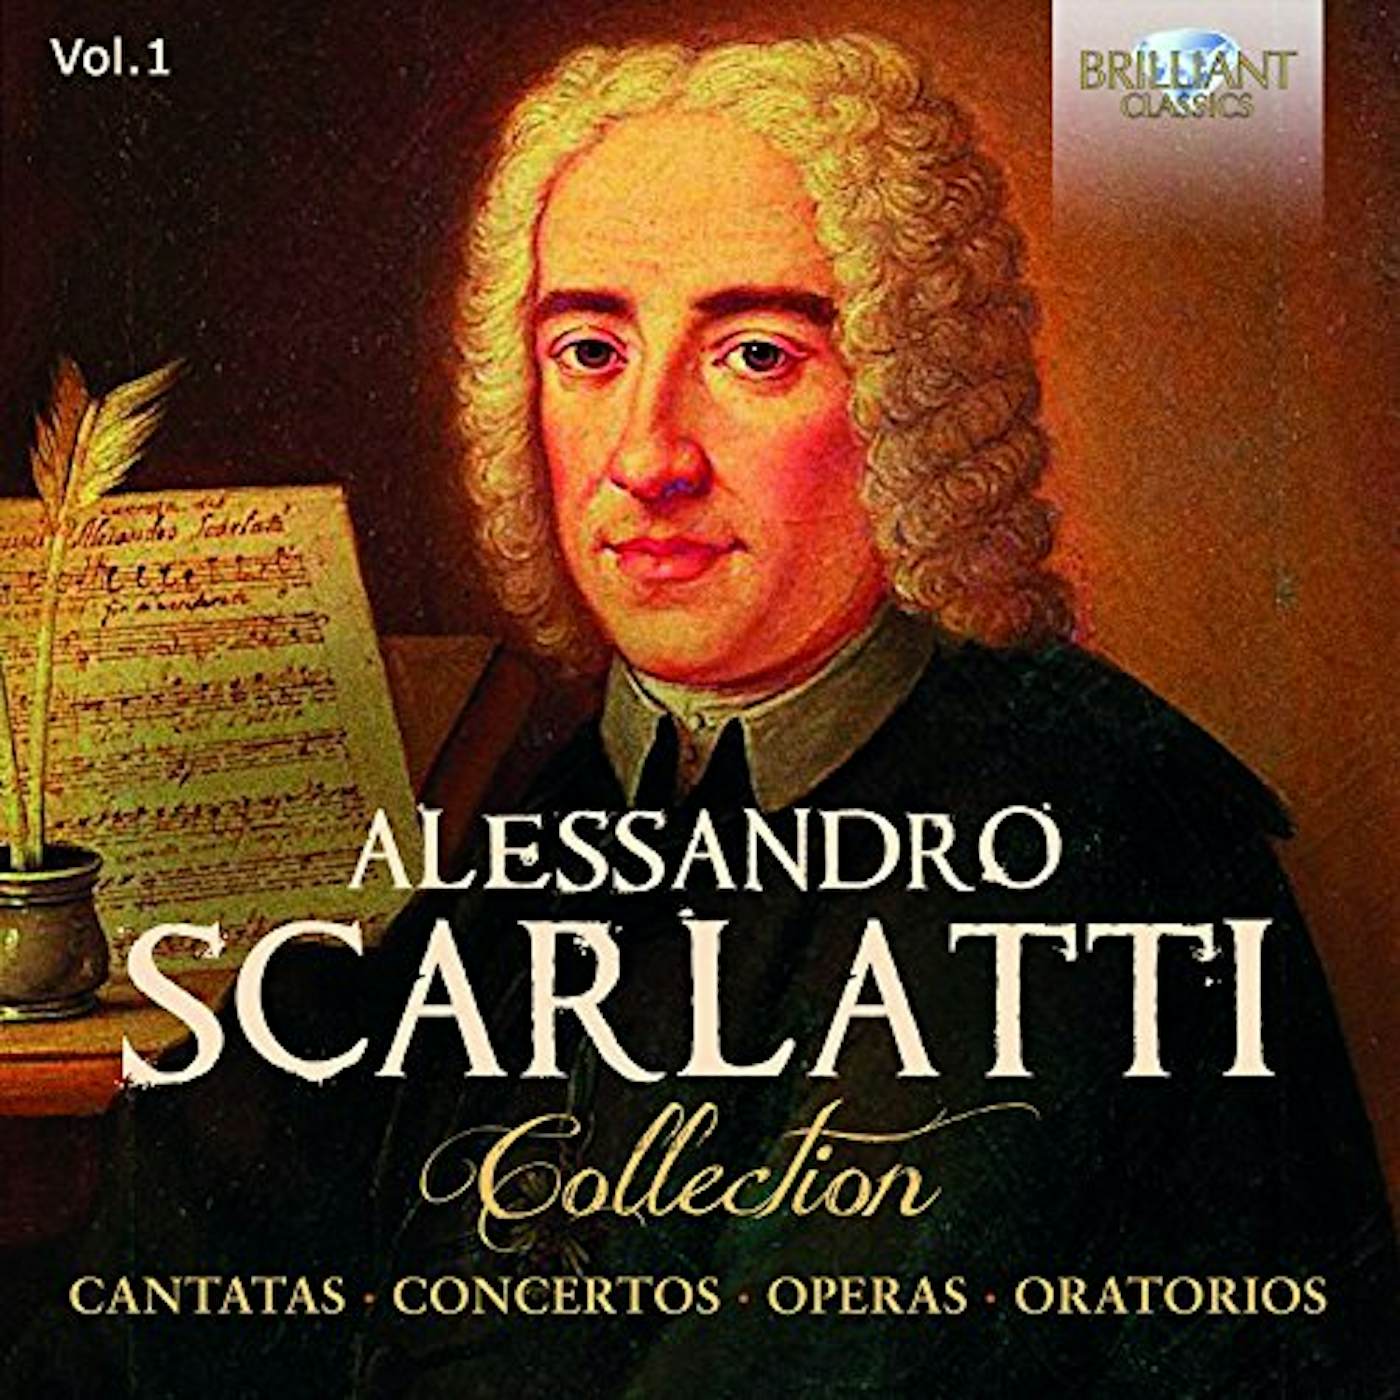 ALESSANDRO SCARLATTI COLLECTION 1 CD